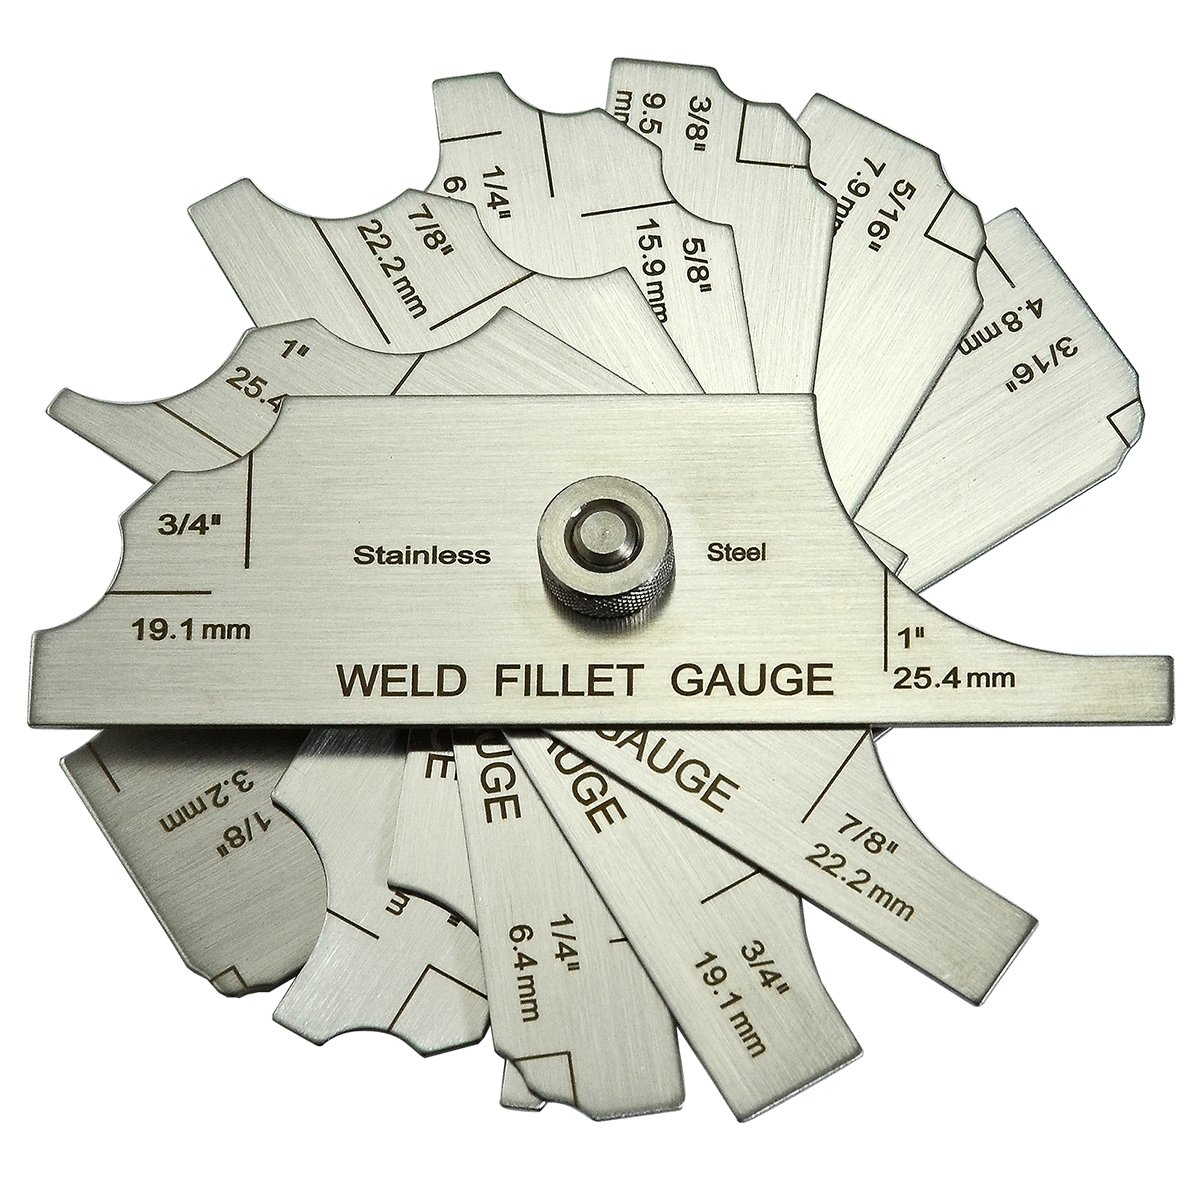 7piece Fillet Weld Set Gage Rl Gauge Depth Gauges Welding Inspection Test Ulnar Metric & Inch